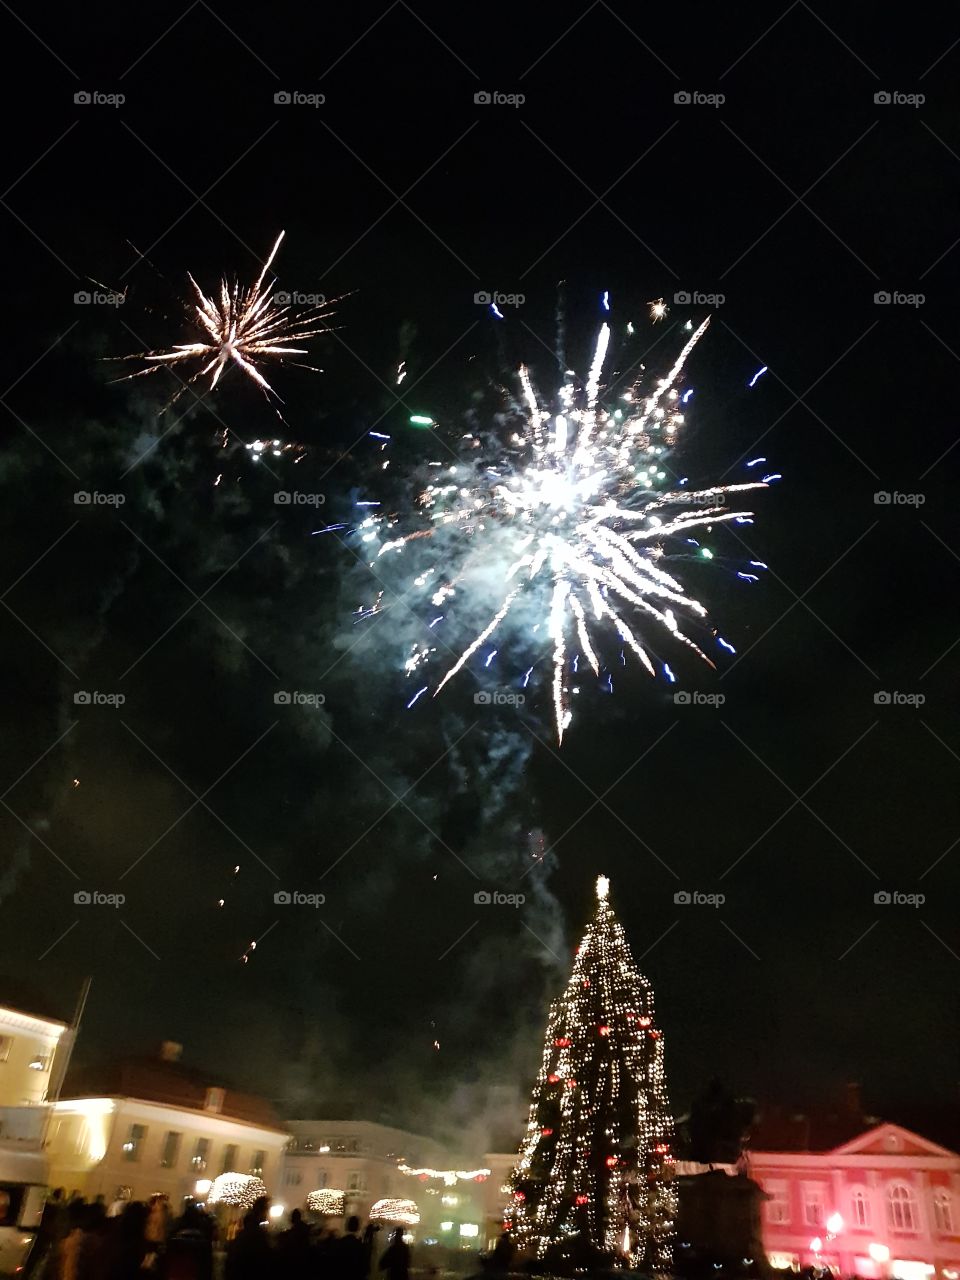 Fireworks, Festival, Christmas, Celebration, Winter